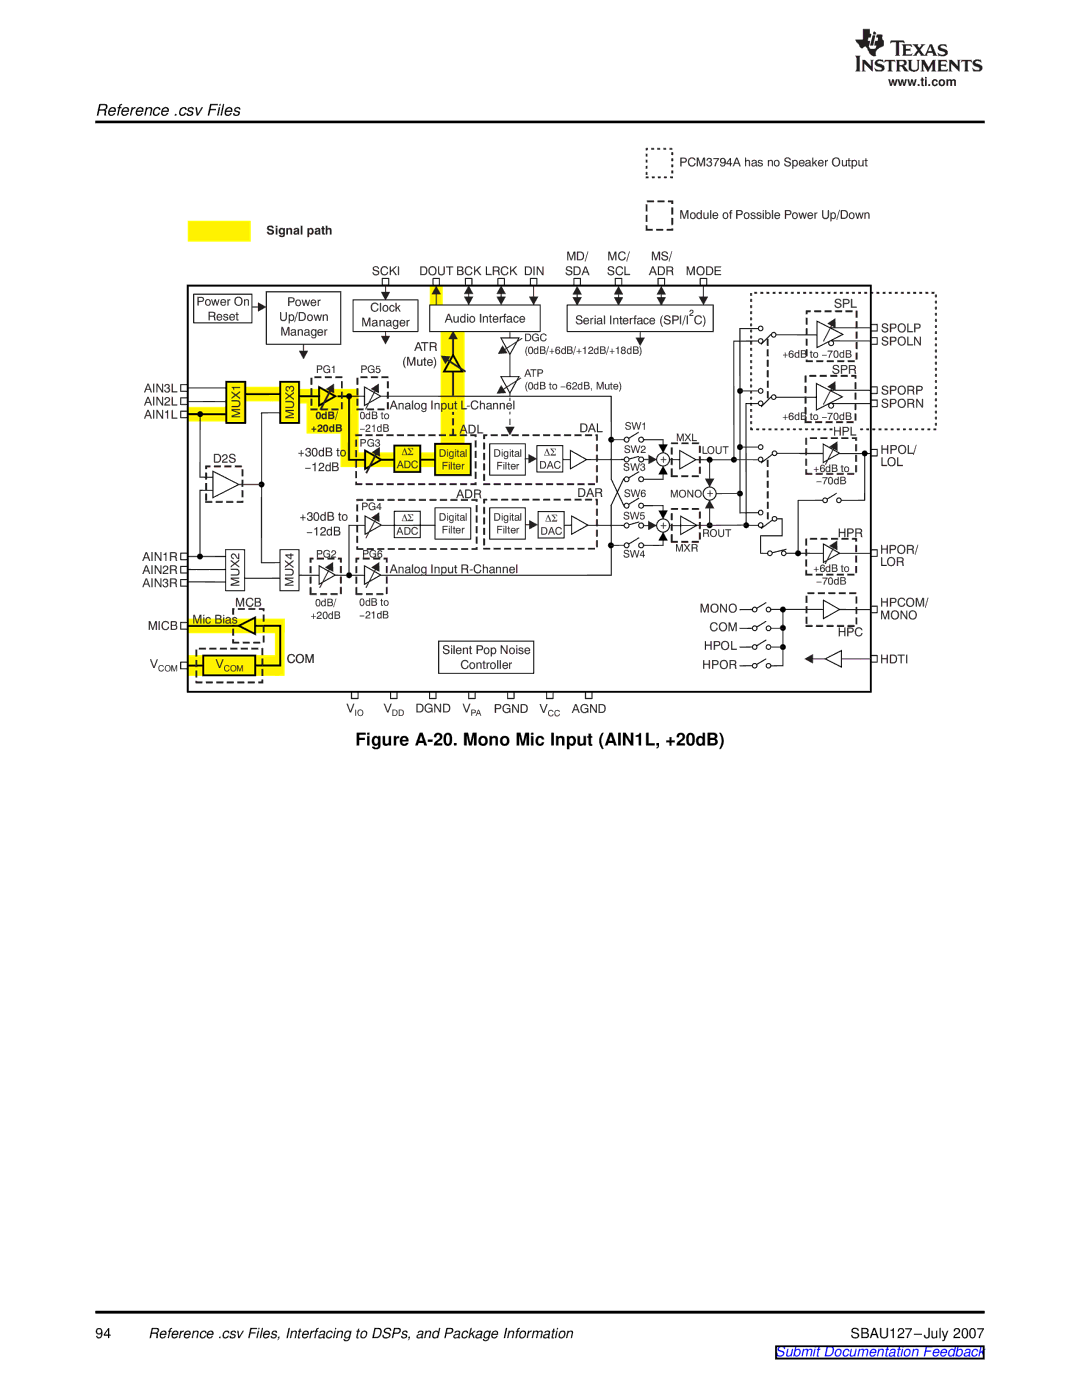 Texas Instruments DEM-DAI3793A manual Figure A-20. Mono Mic Input AIN1L, +20dB 